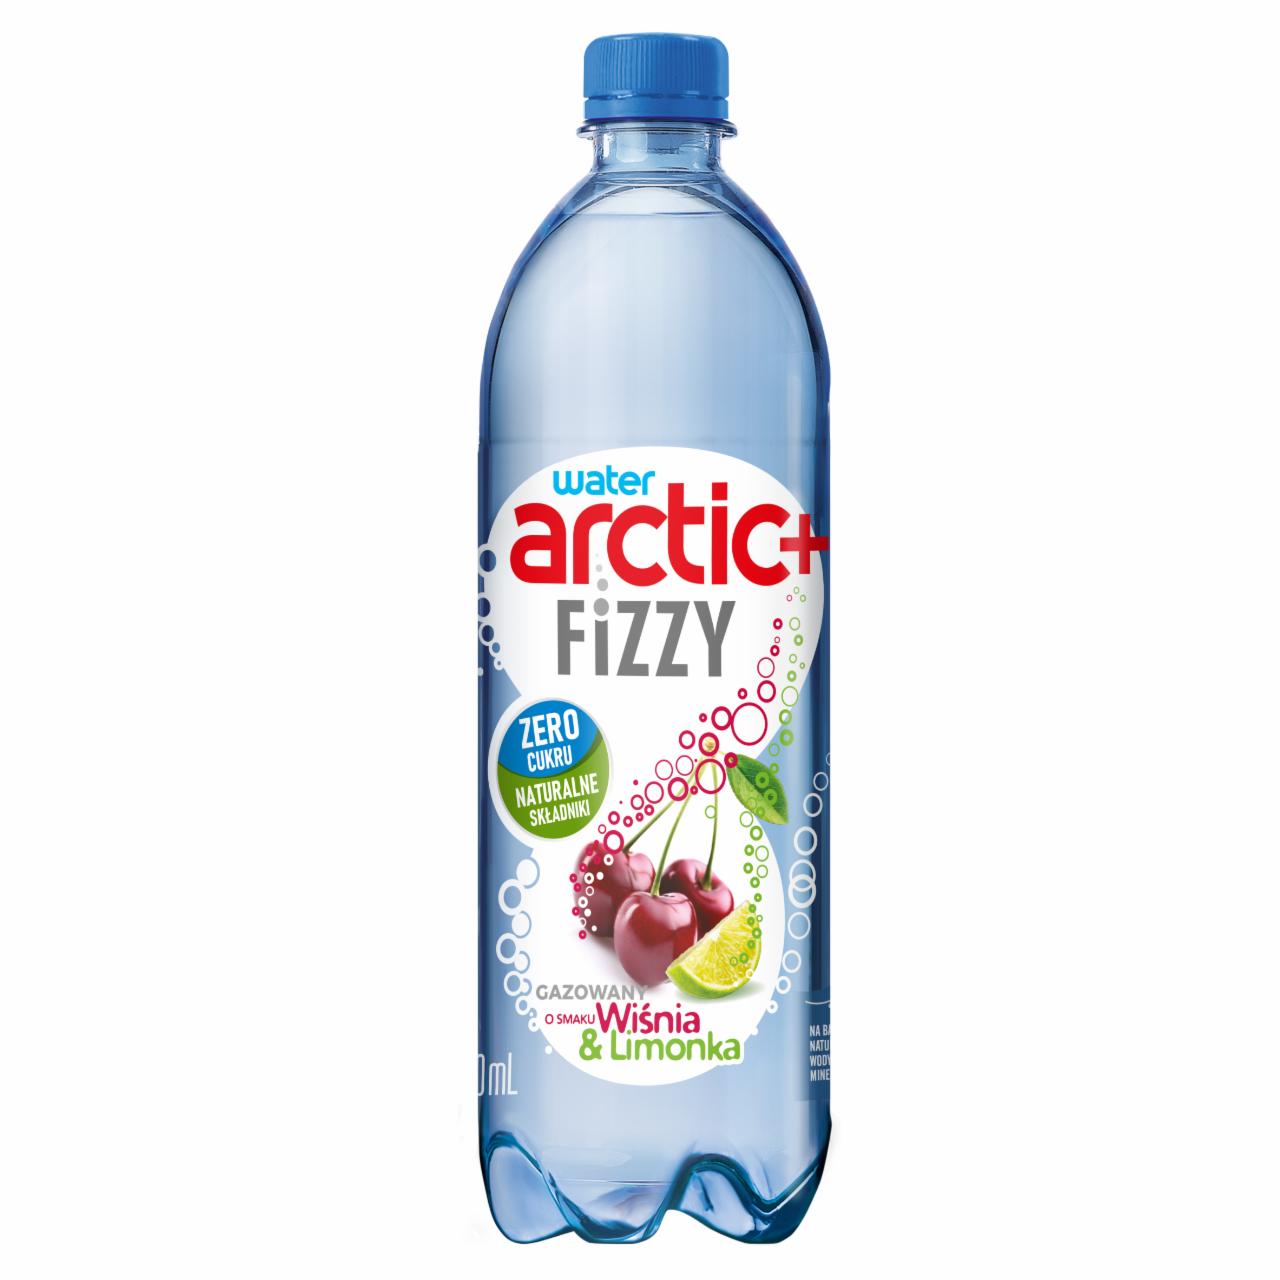 Zdjęcia - Arctic+ Fizzy Napój gazowany o smaku wiśnia & limonka 750 ml